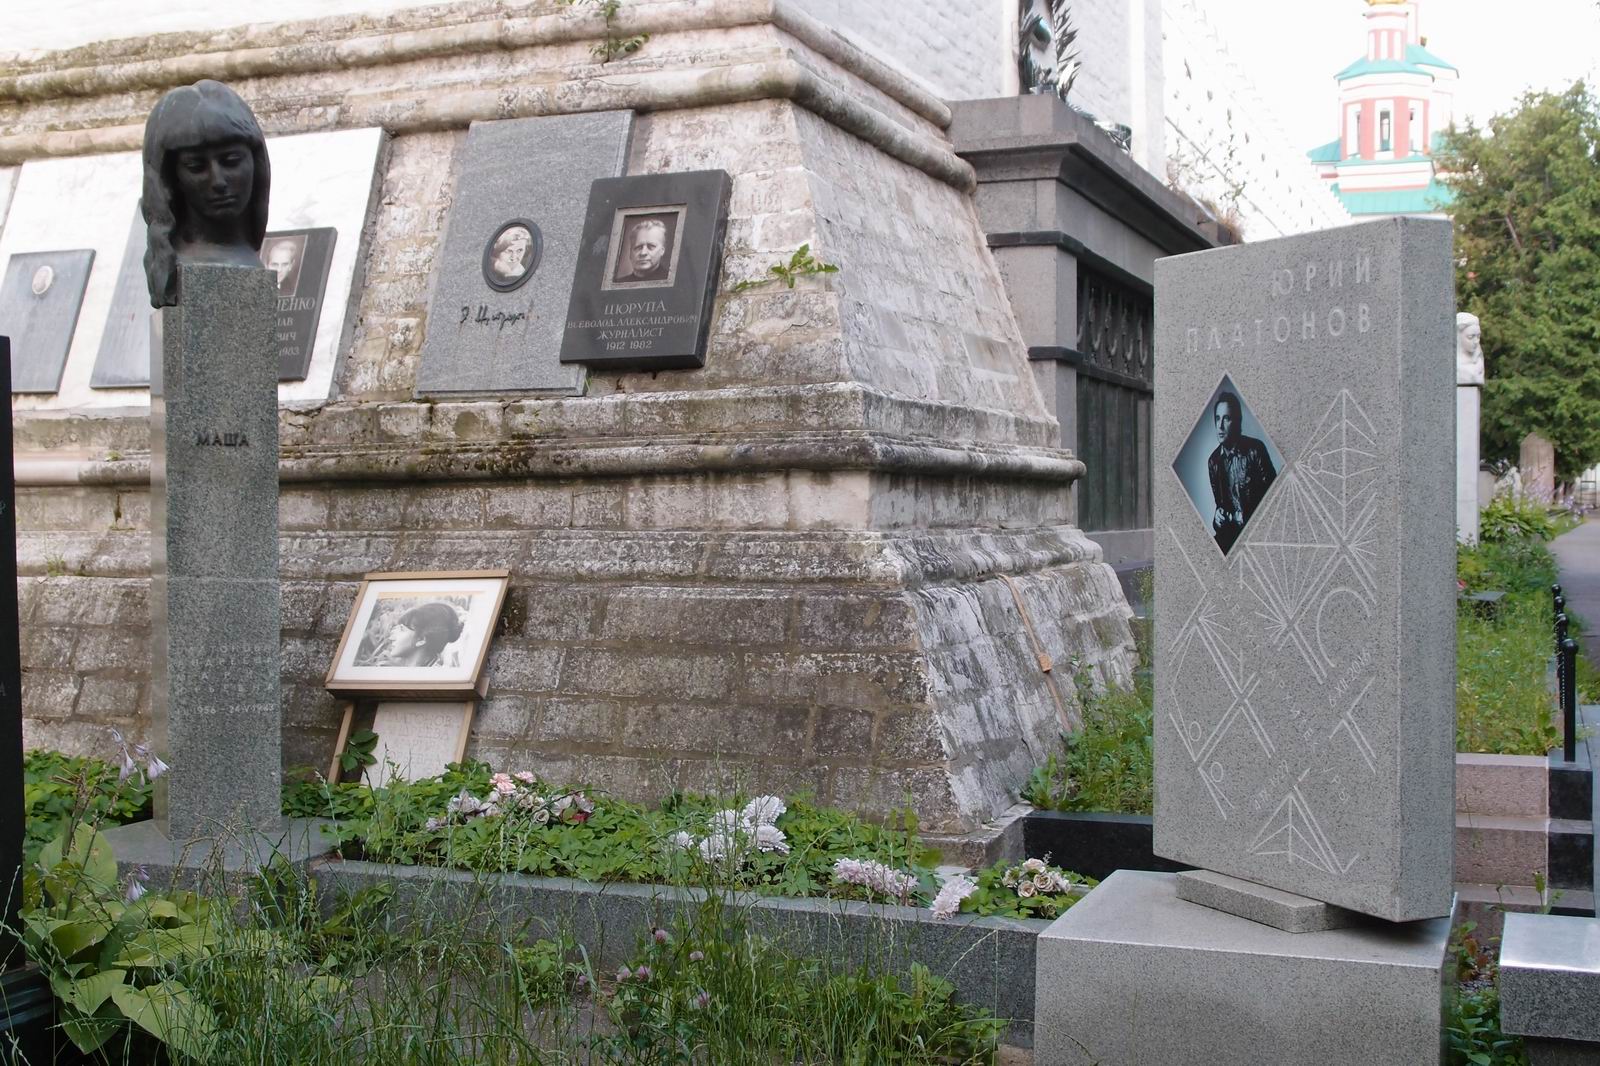 Памятник на могиле Платонова Ю.П. (1929-2016), на Новодевичьем кладбище (3-65-10). Нажмите левую кнопку мыши чтобы увидеть фрагмент памятника.